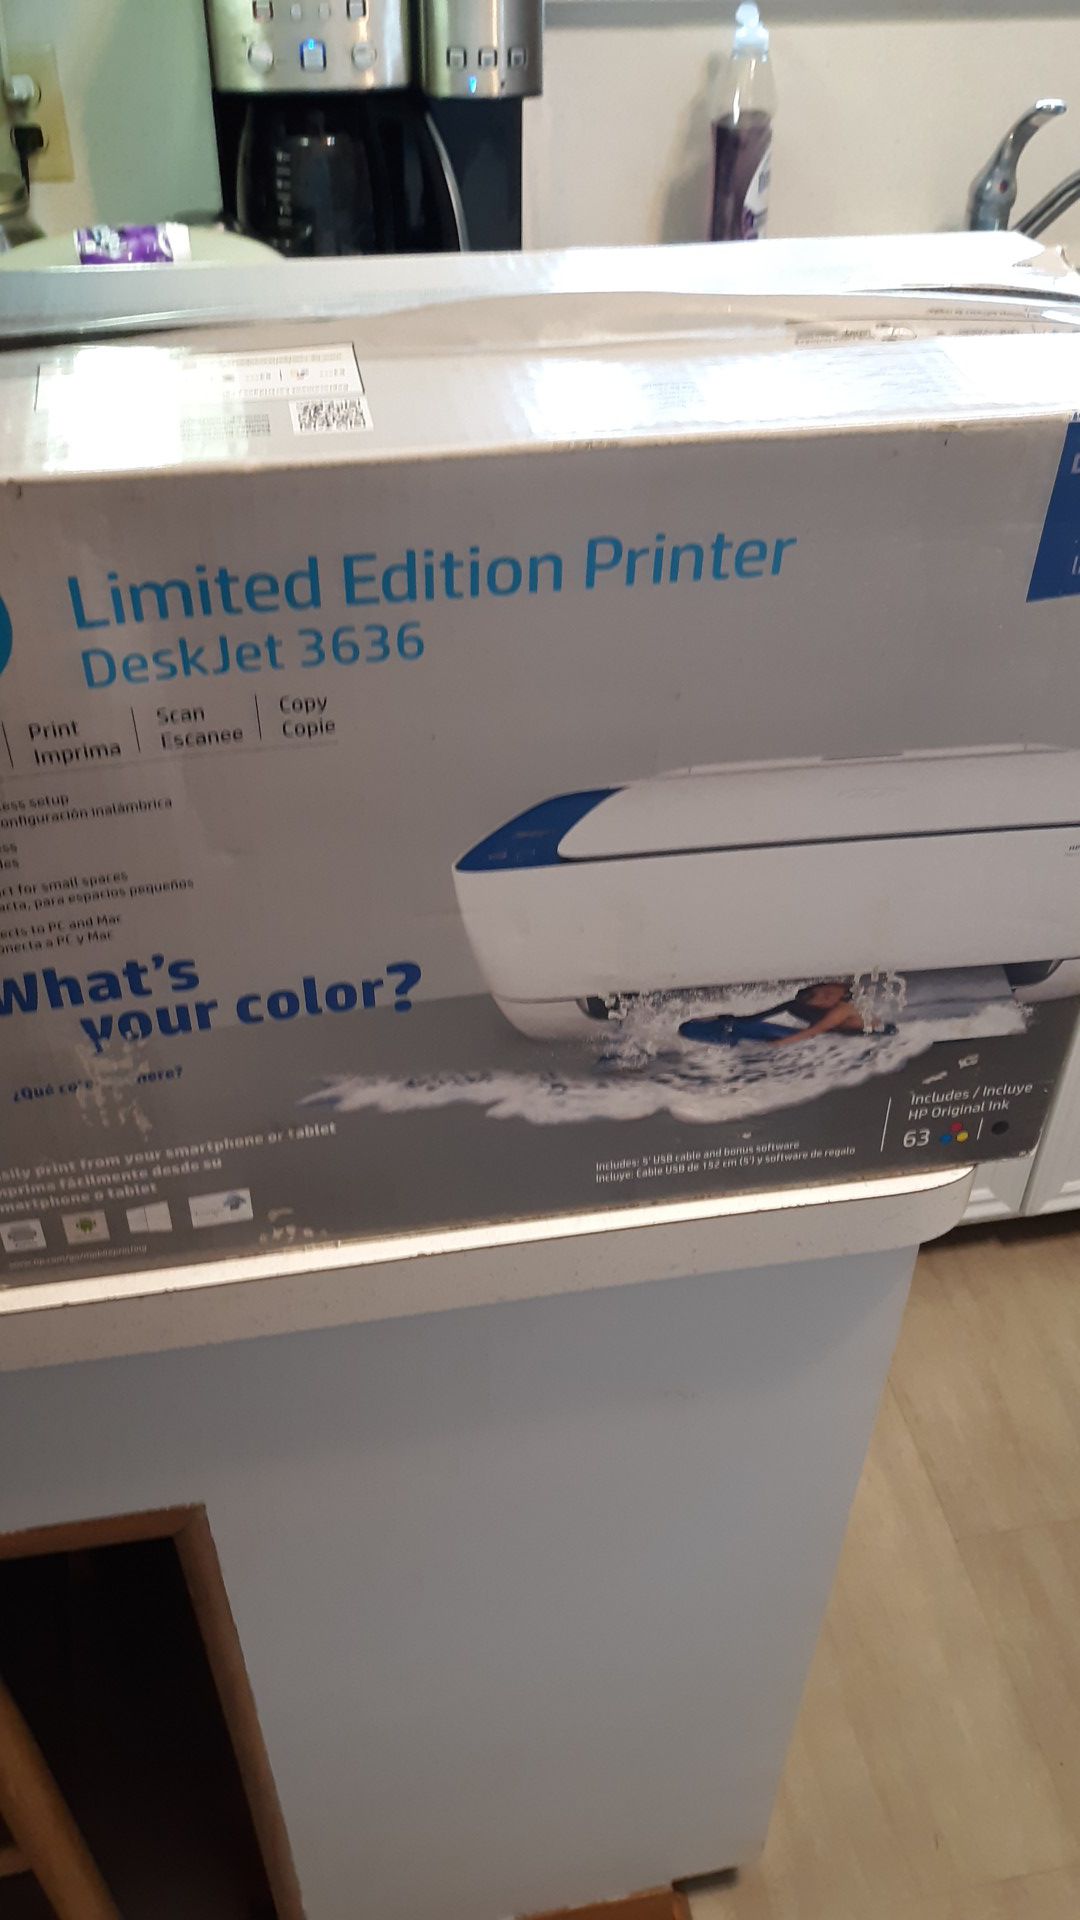 Limited Edition Printer DeskJet 3636